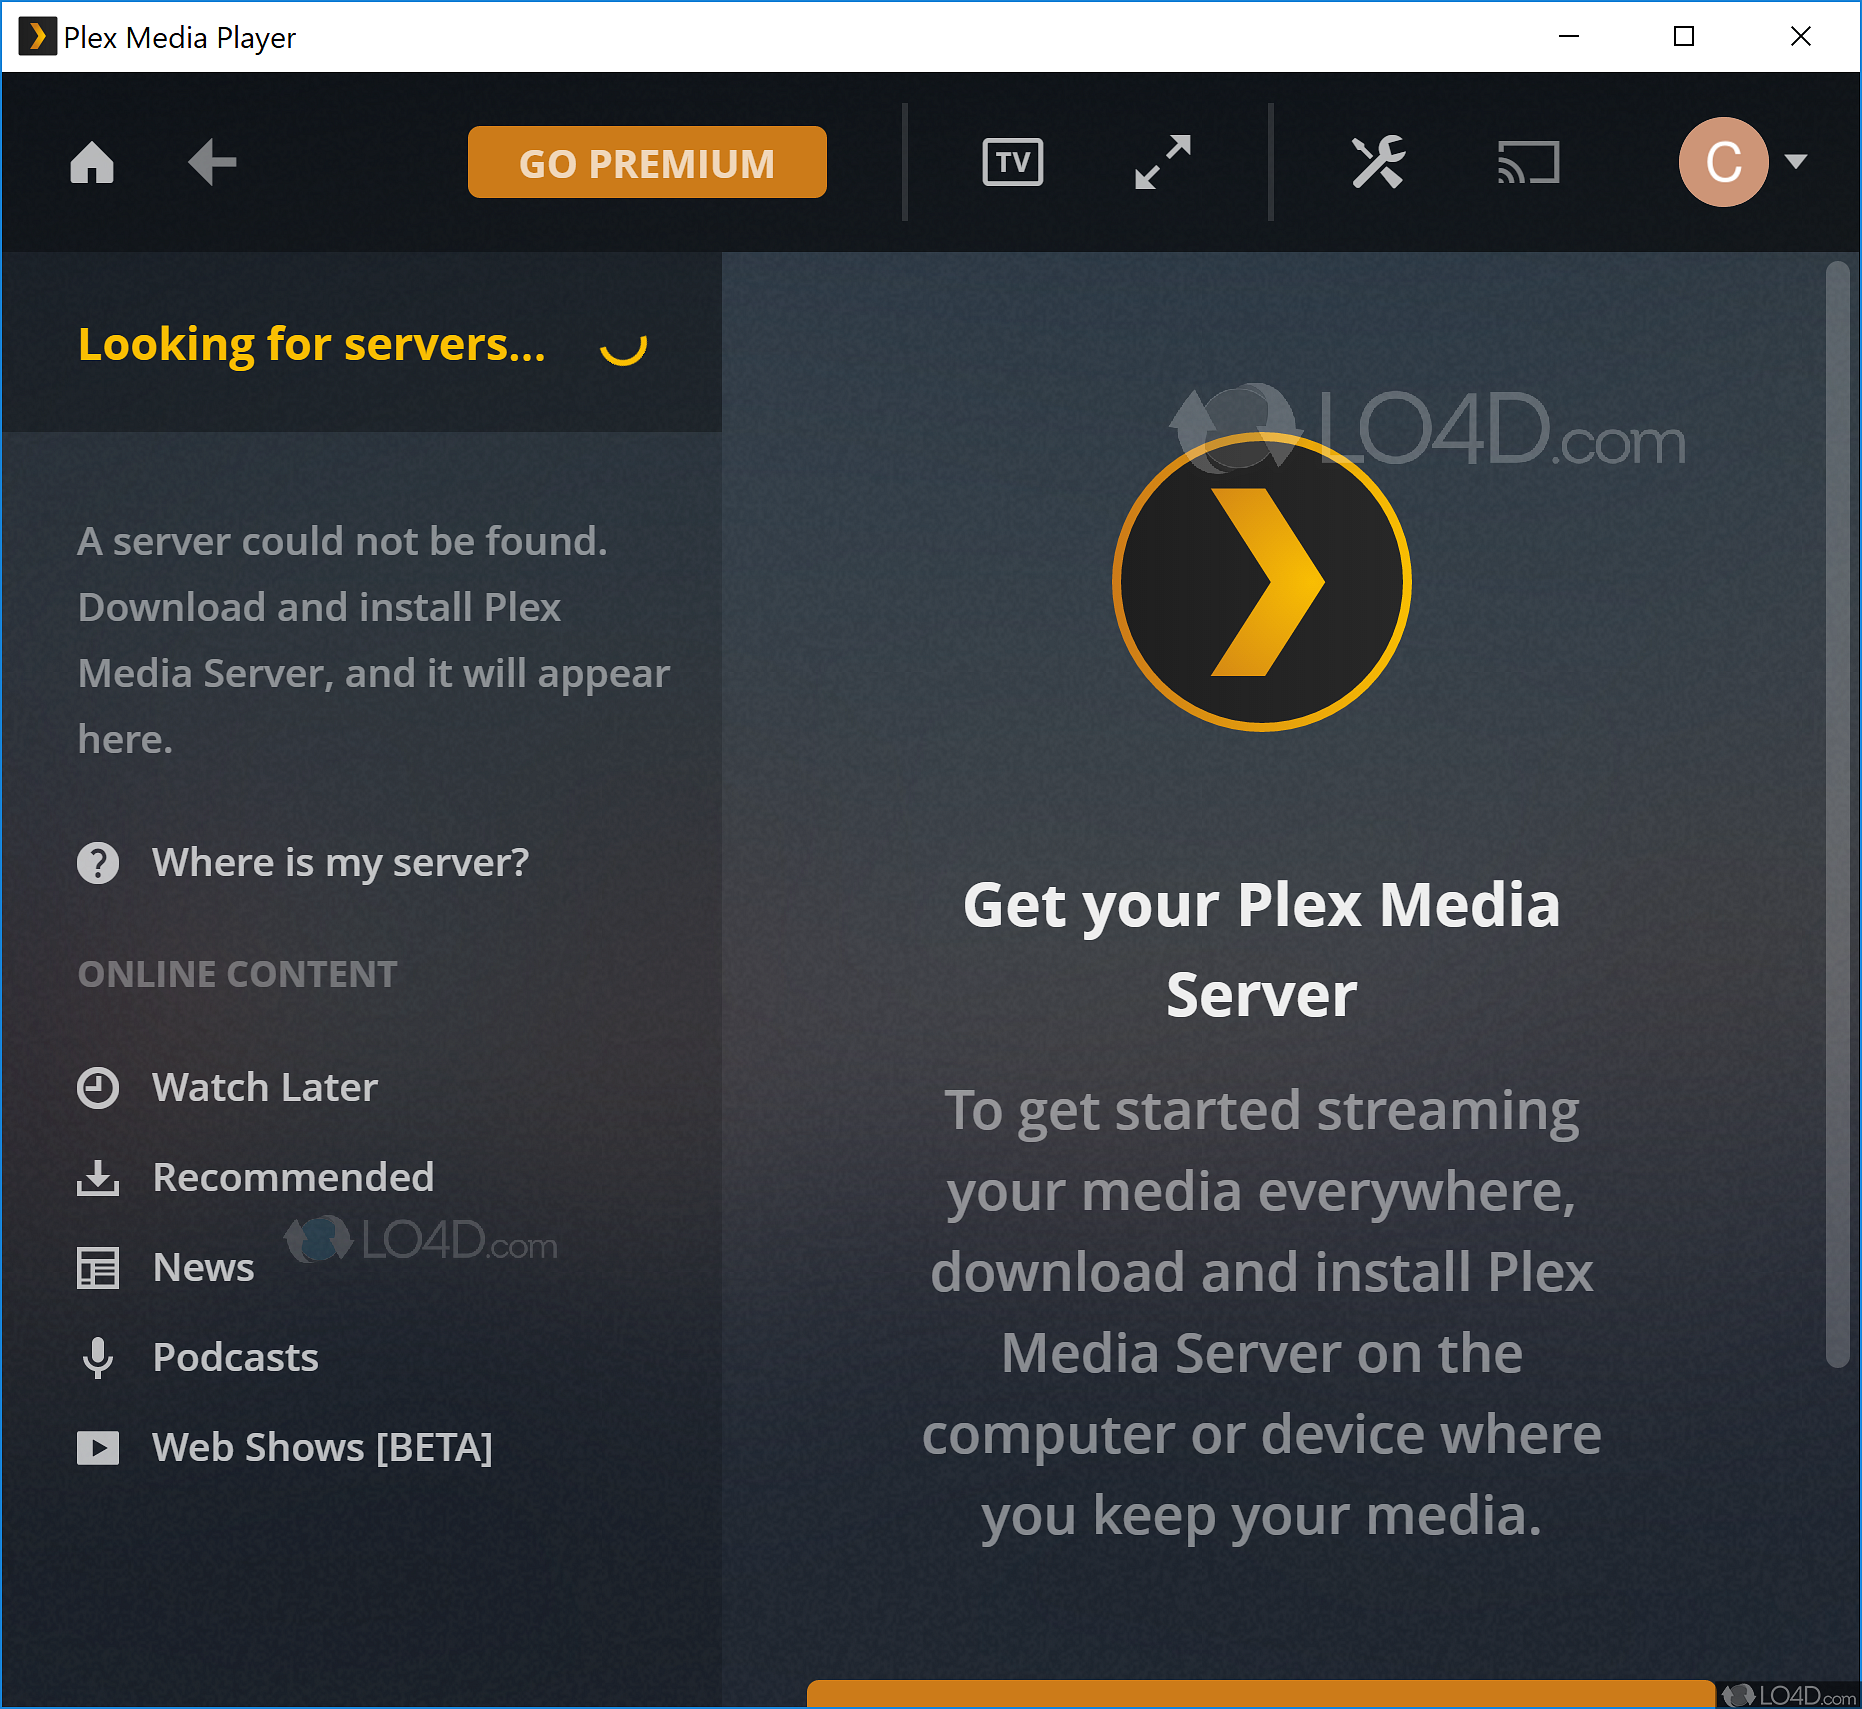 plex media player free download